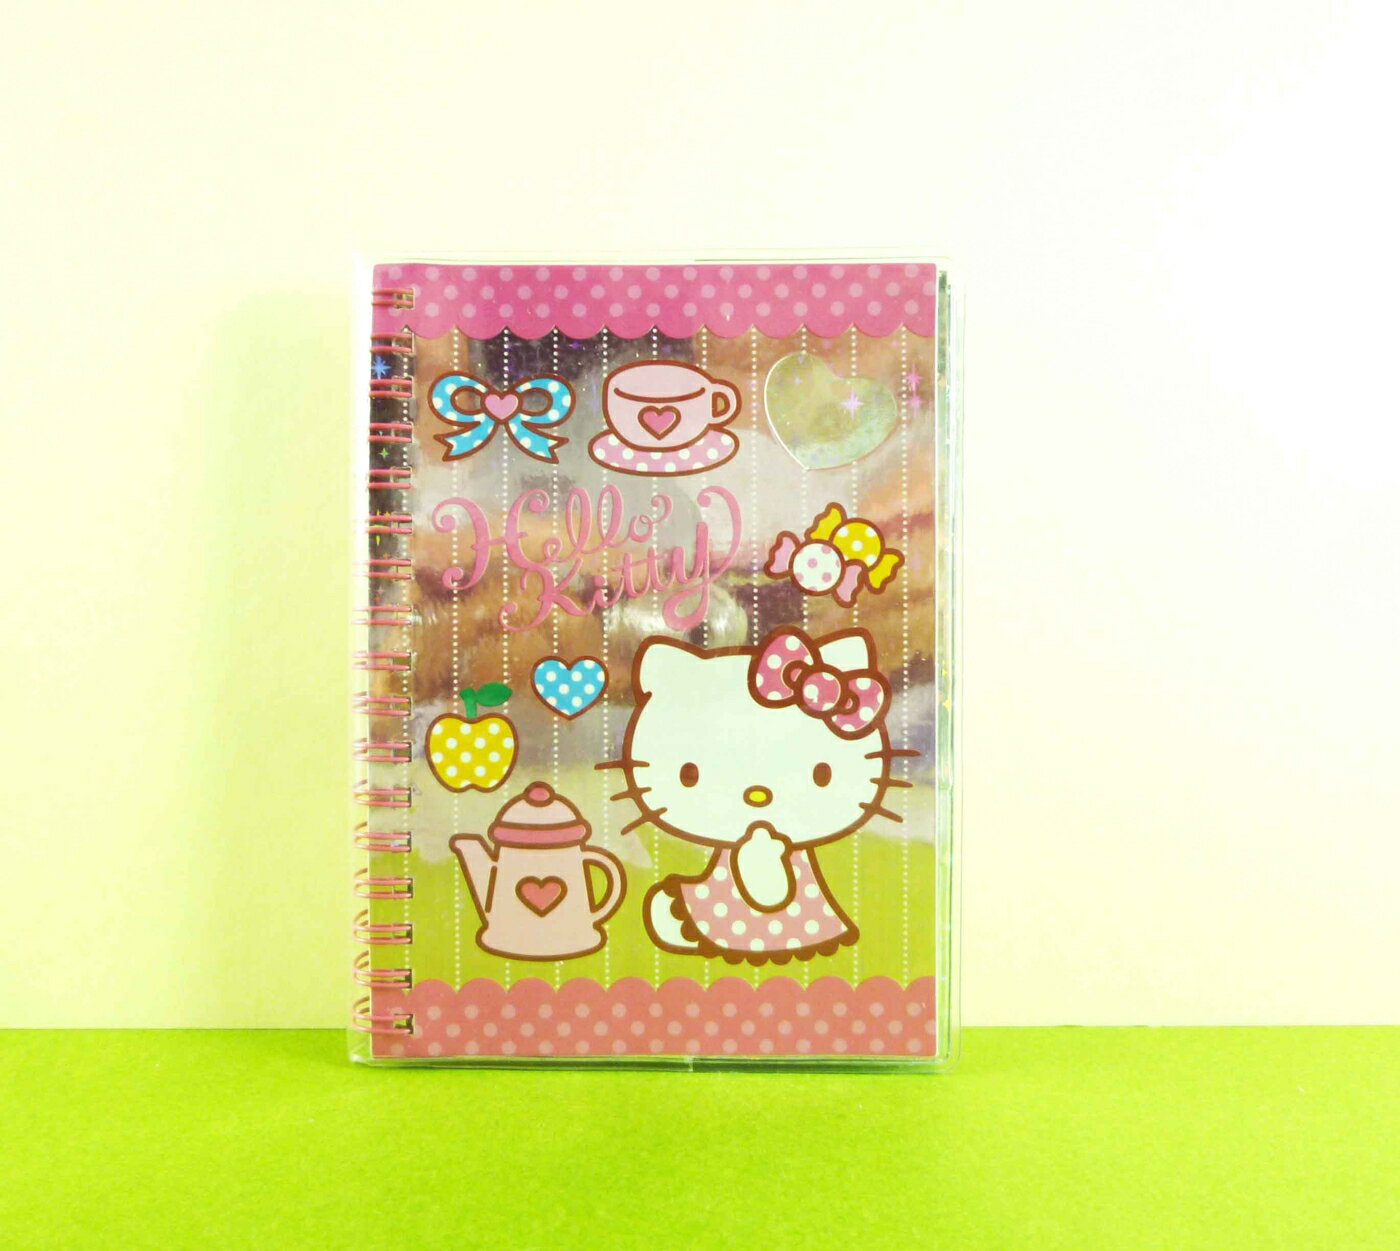 【震撼精品百貨】Hello Kitty 凱蒂貓 貼紙本 咖啡【共1款】*00715 震撼日式精品百貨